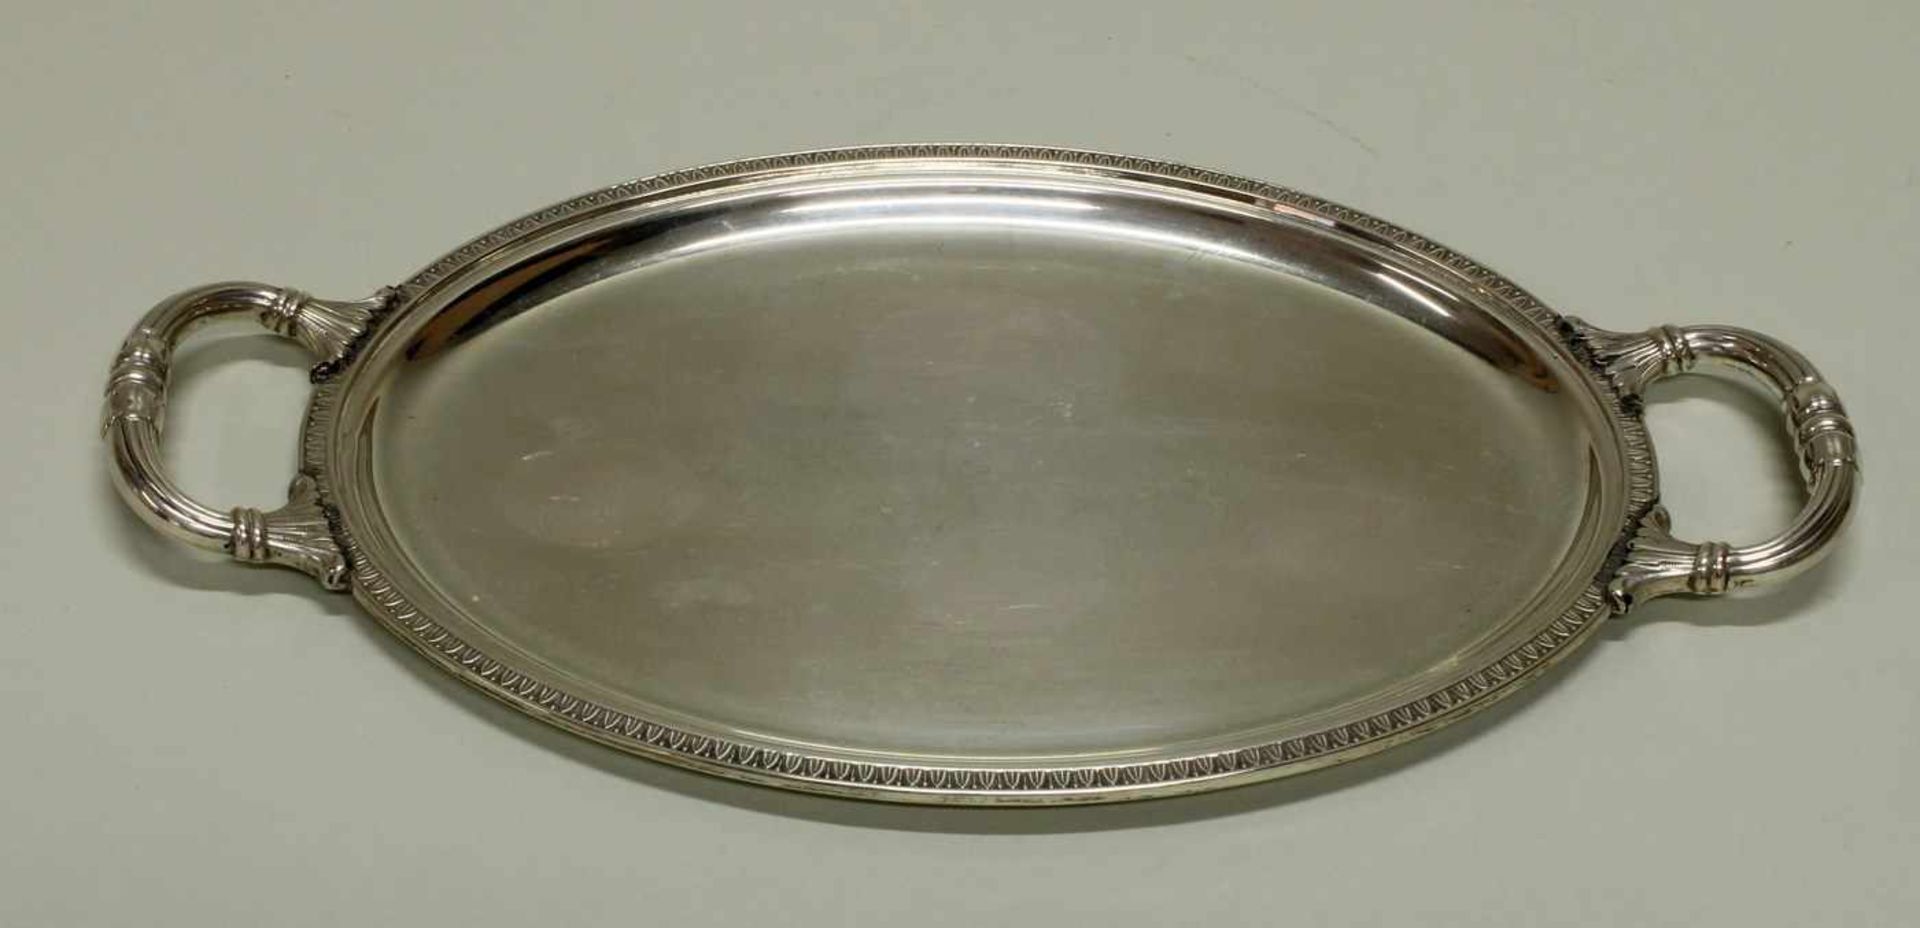 Tablett, Silber 800, Italien, oval, Blattstabrand, zwei Handhaben, 30.5 x 17.5 cm, ca. 253 g- - - - Image 2 of 2